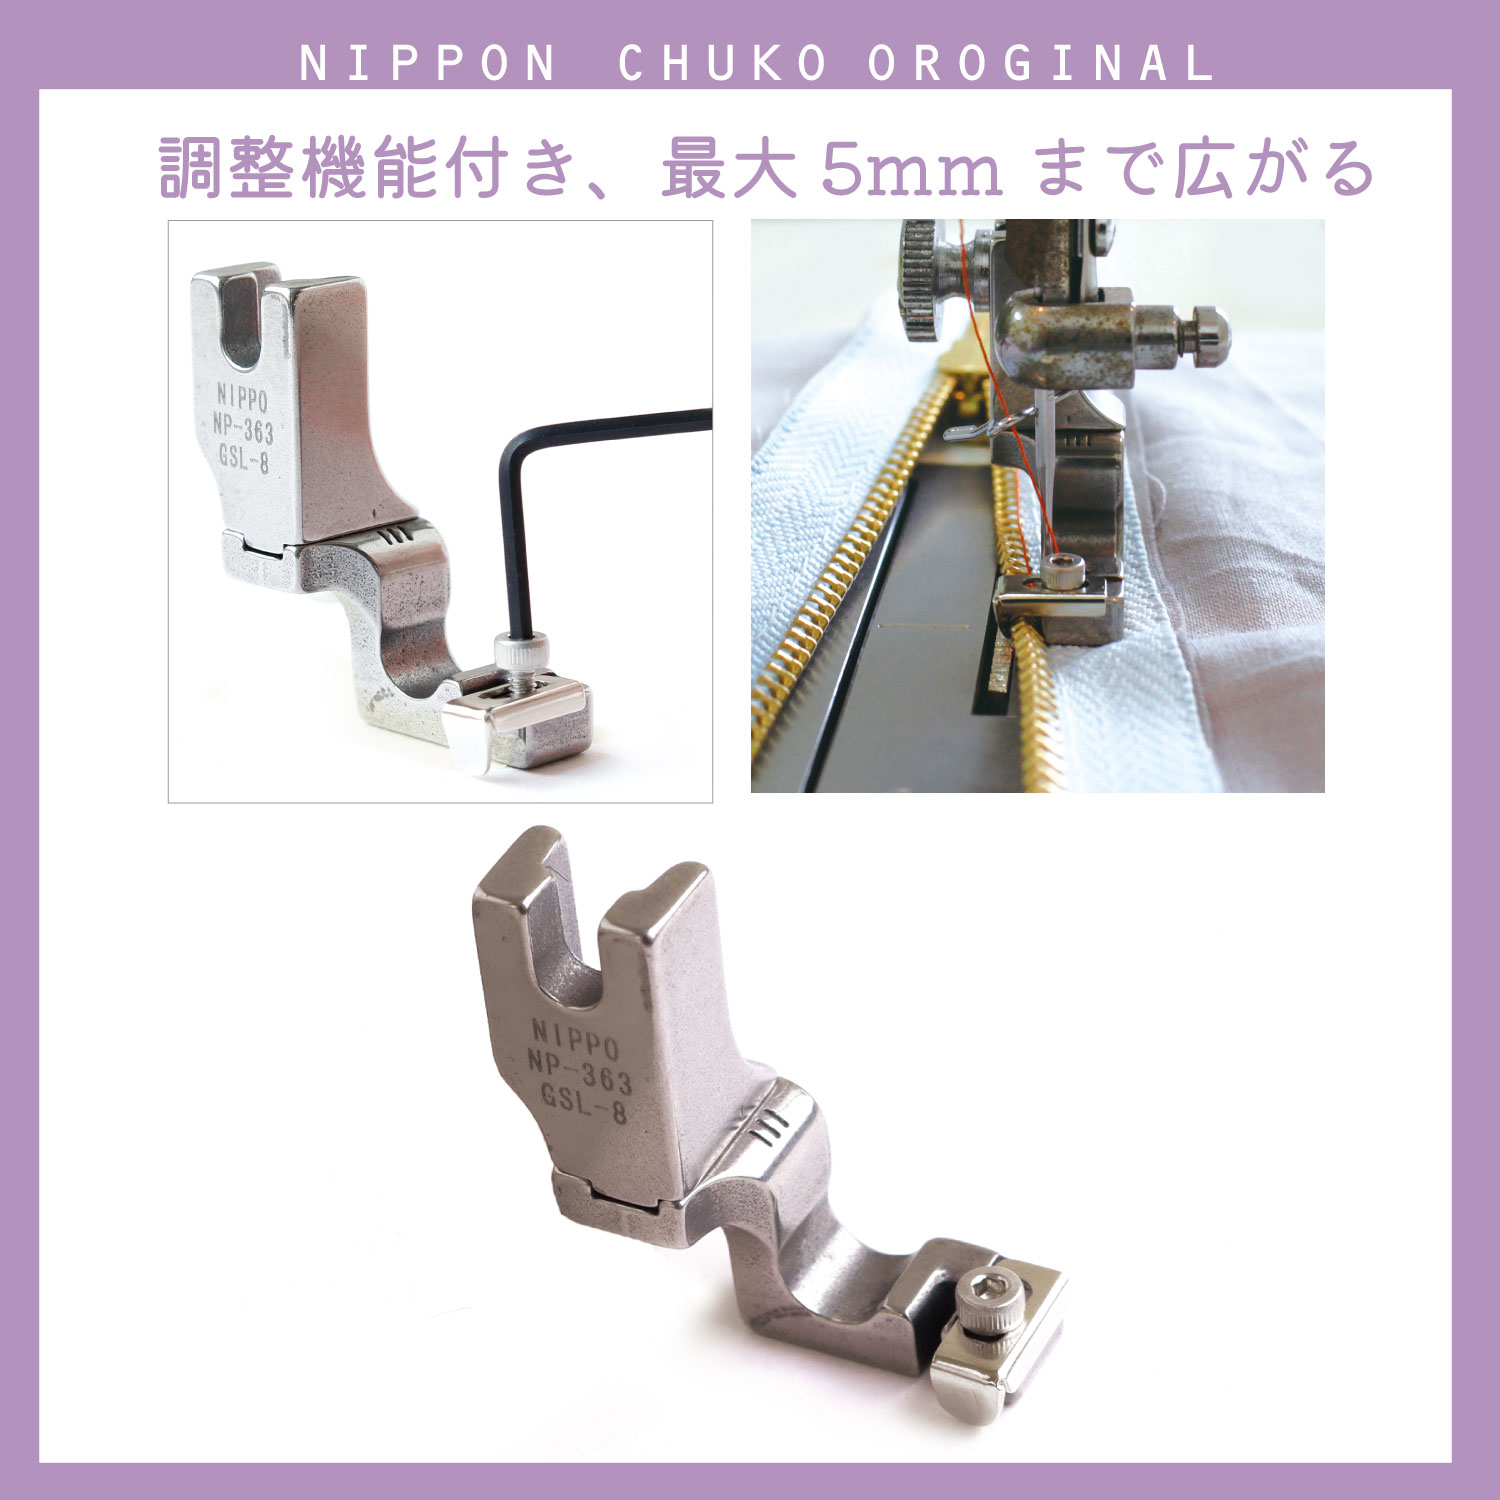 NI-03419 Occupational sewing machine concealed zipper presser (pcs)